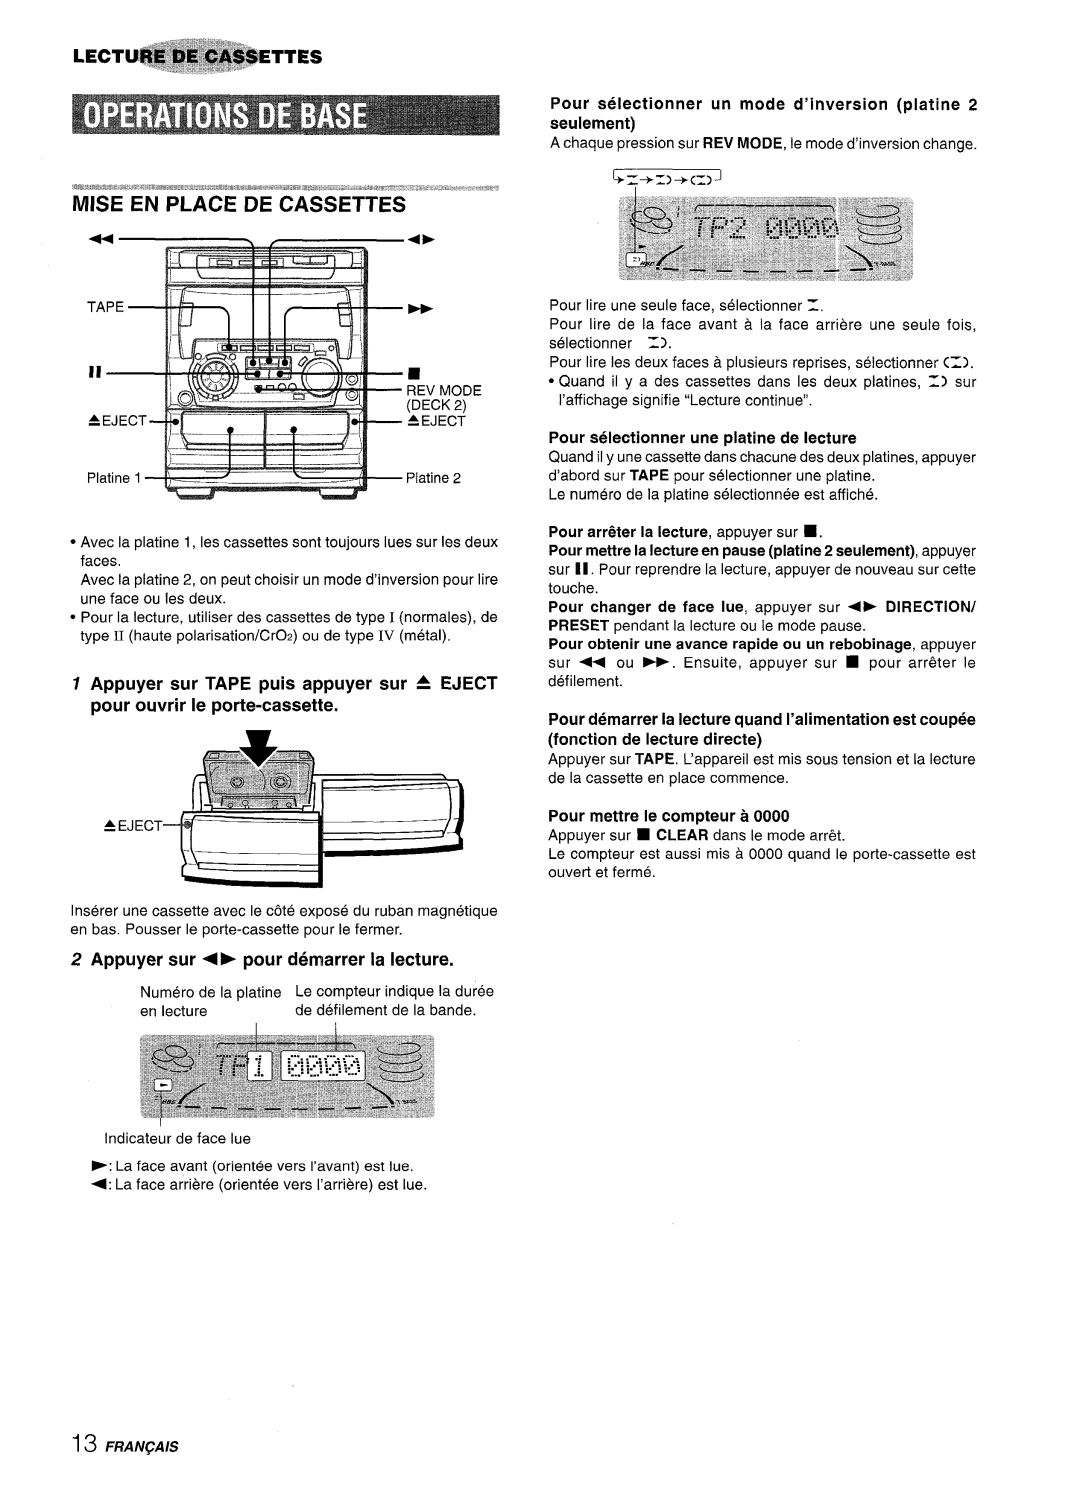 Sony NSX-A707 manual Appuyer sur, pour demarrer la lecture, Pour selectionner un mode d’inversion platine 